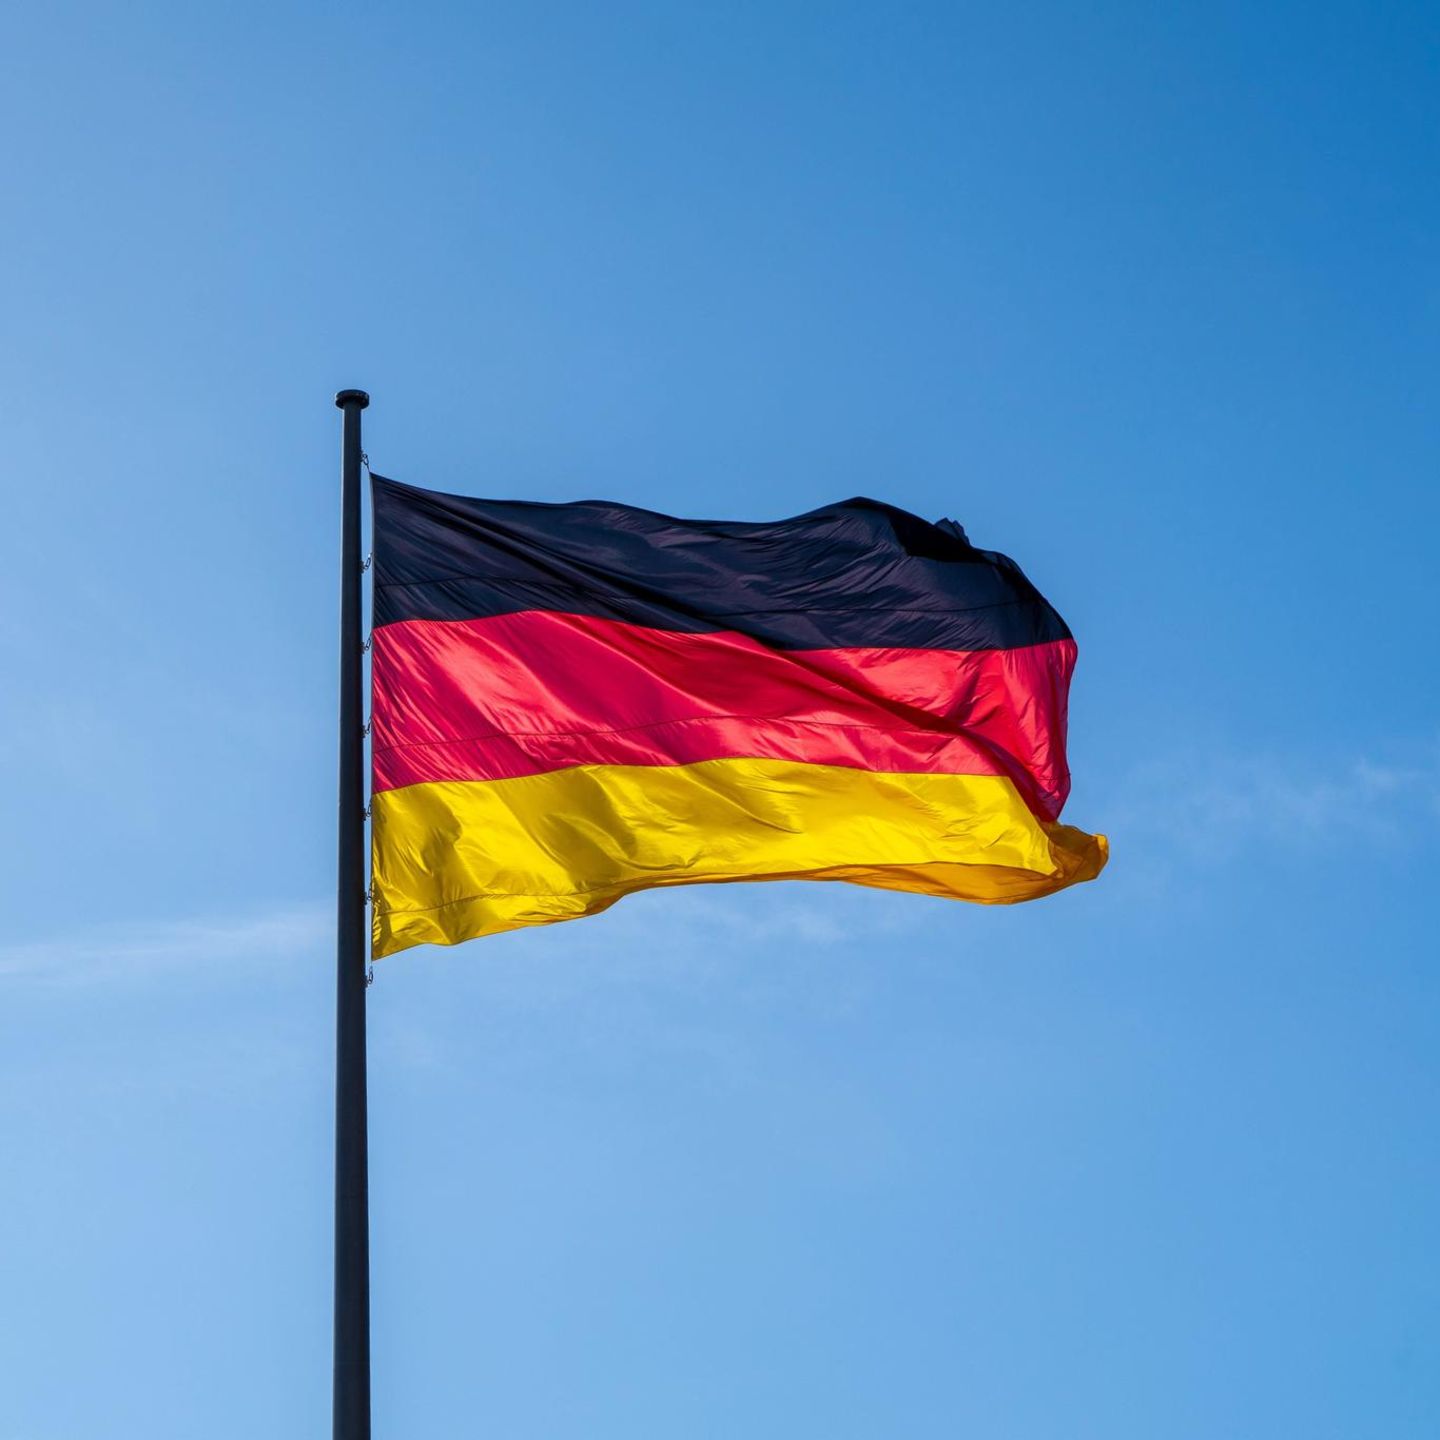 Dänemark: Deutsche Minderheit will ohne Erlaubnis deutsche Flagge hissen